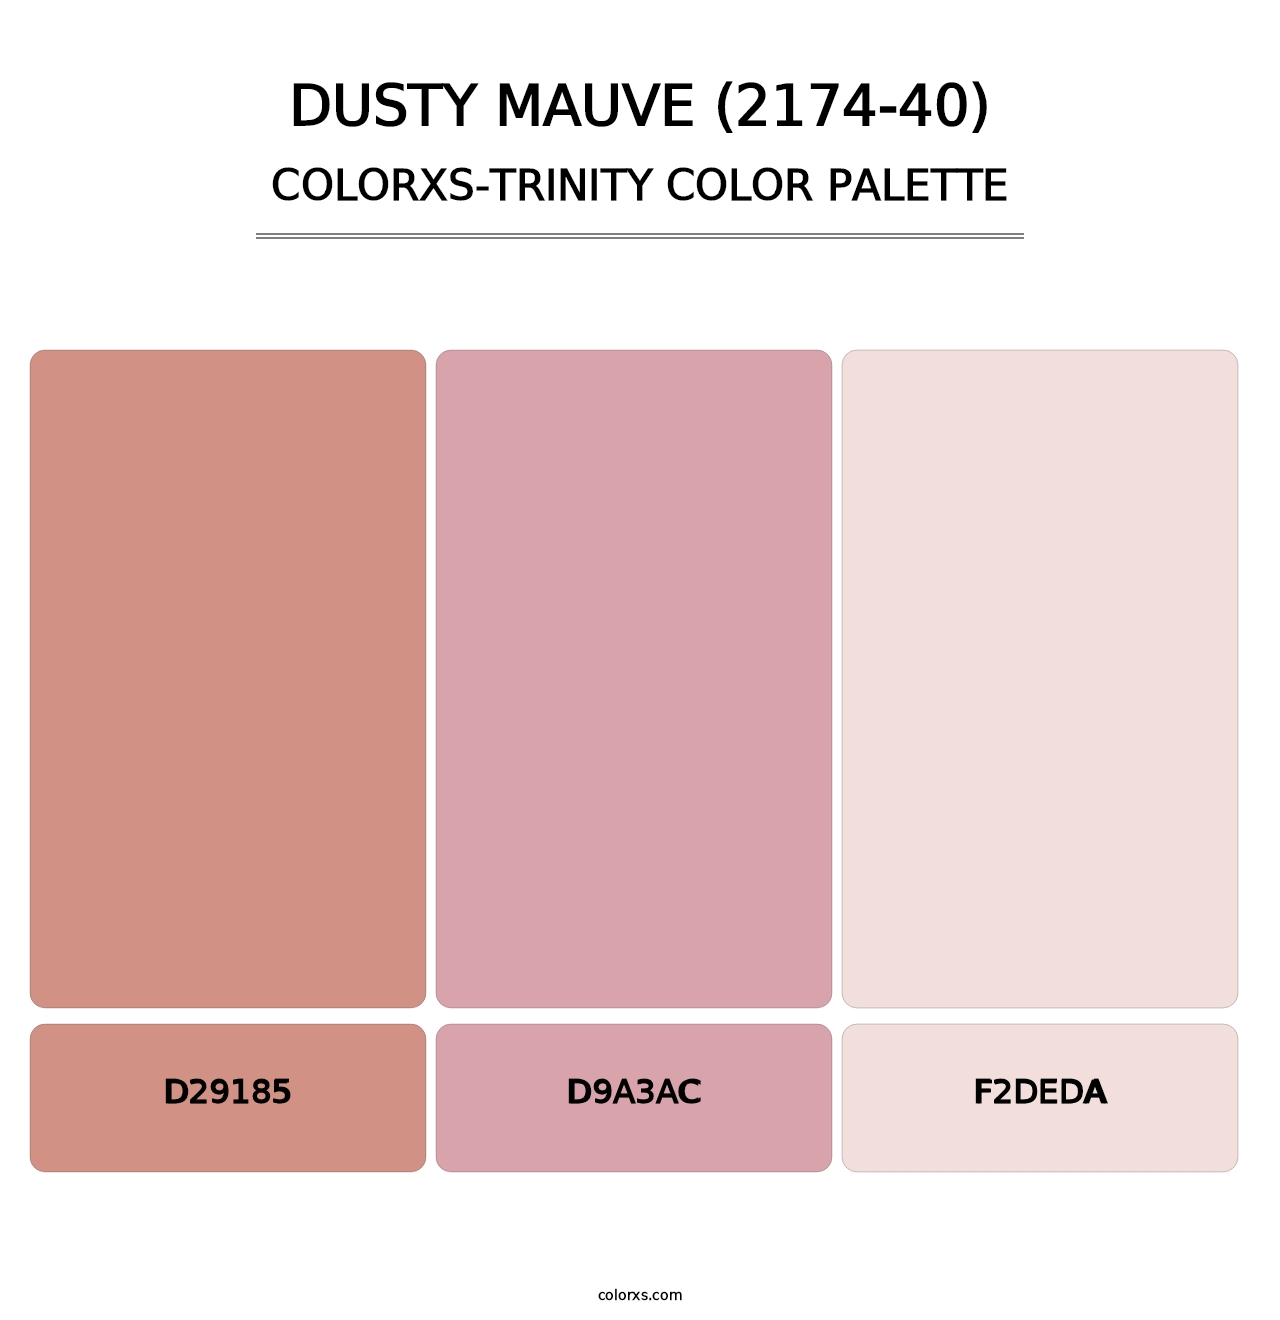 Dusty Mauve (2174-40) - Colorxs Trinity Palette